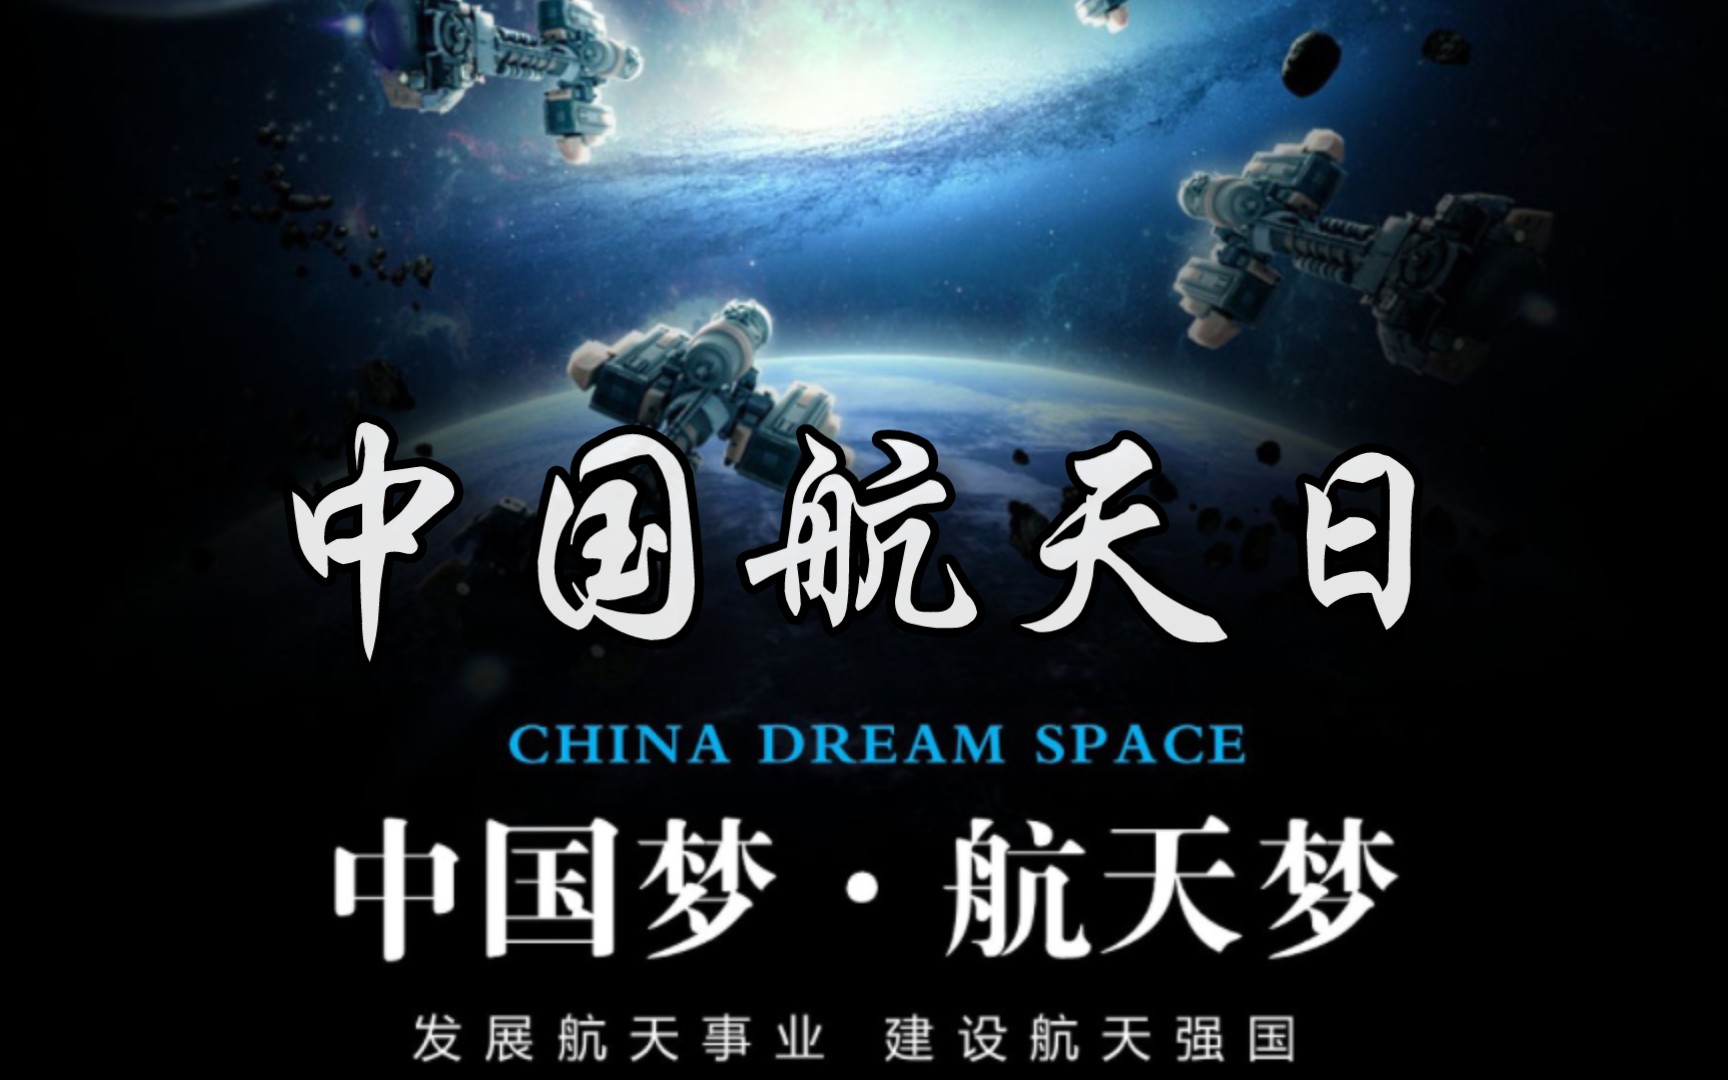 中国航天日43935图片